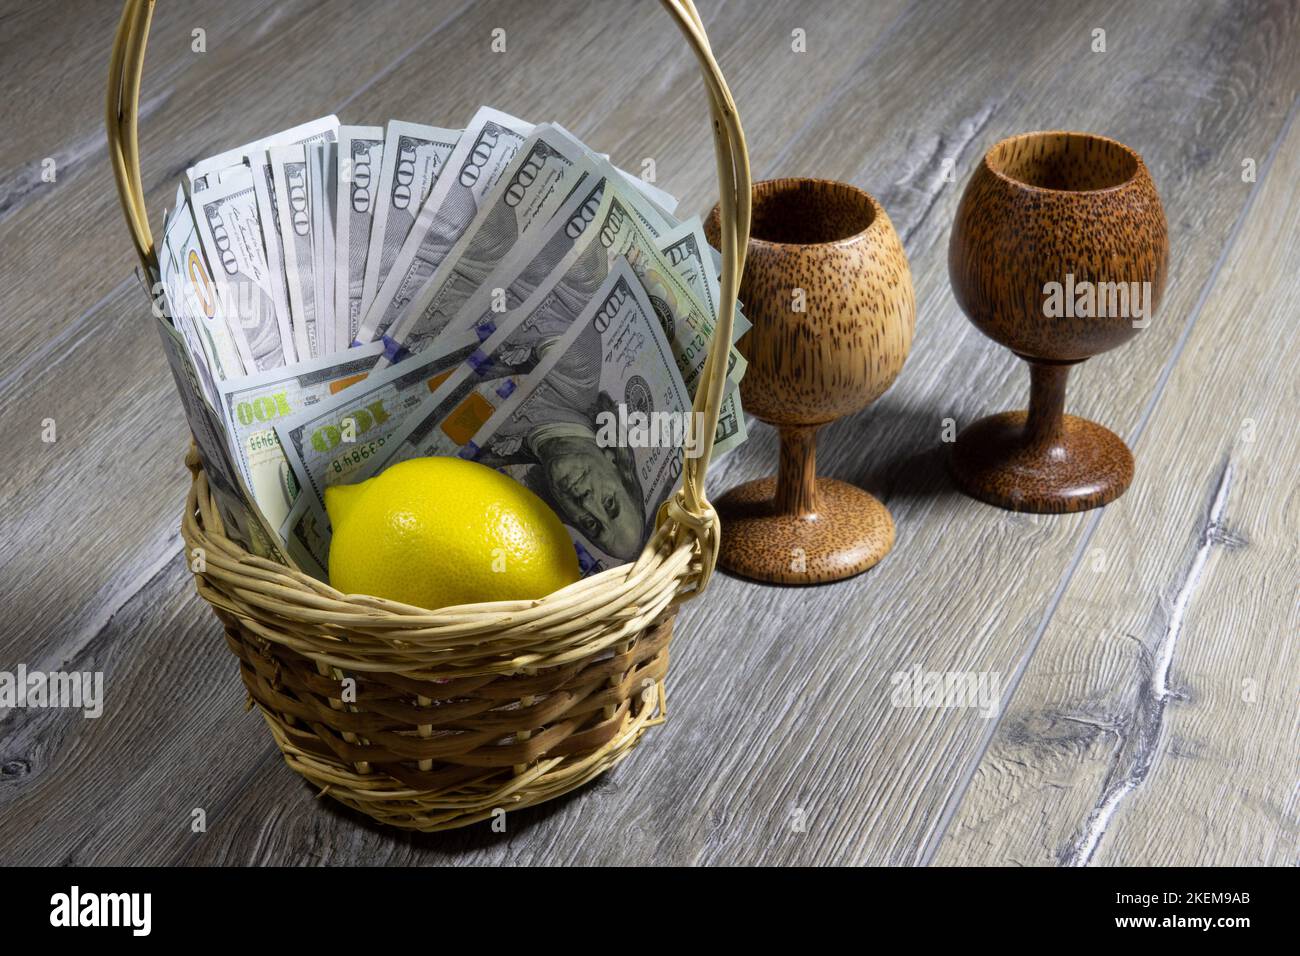 Panier en osier avec billets de cent dollars américains et citron à l'intérieur sur une table en bois gris avec deux gobelets en bois. Banque et finan Banque D'Images